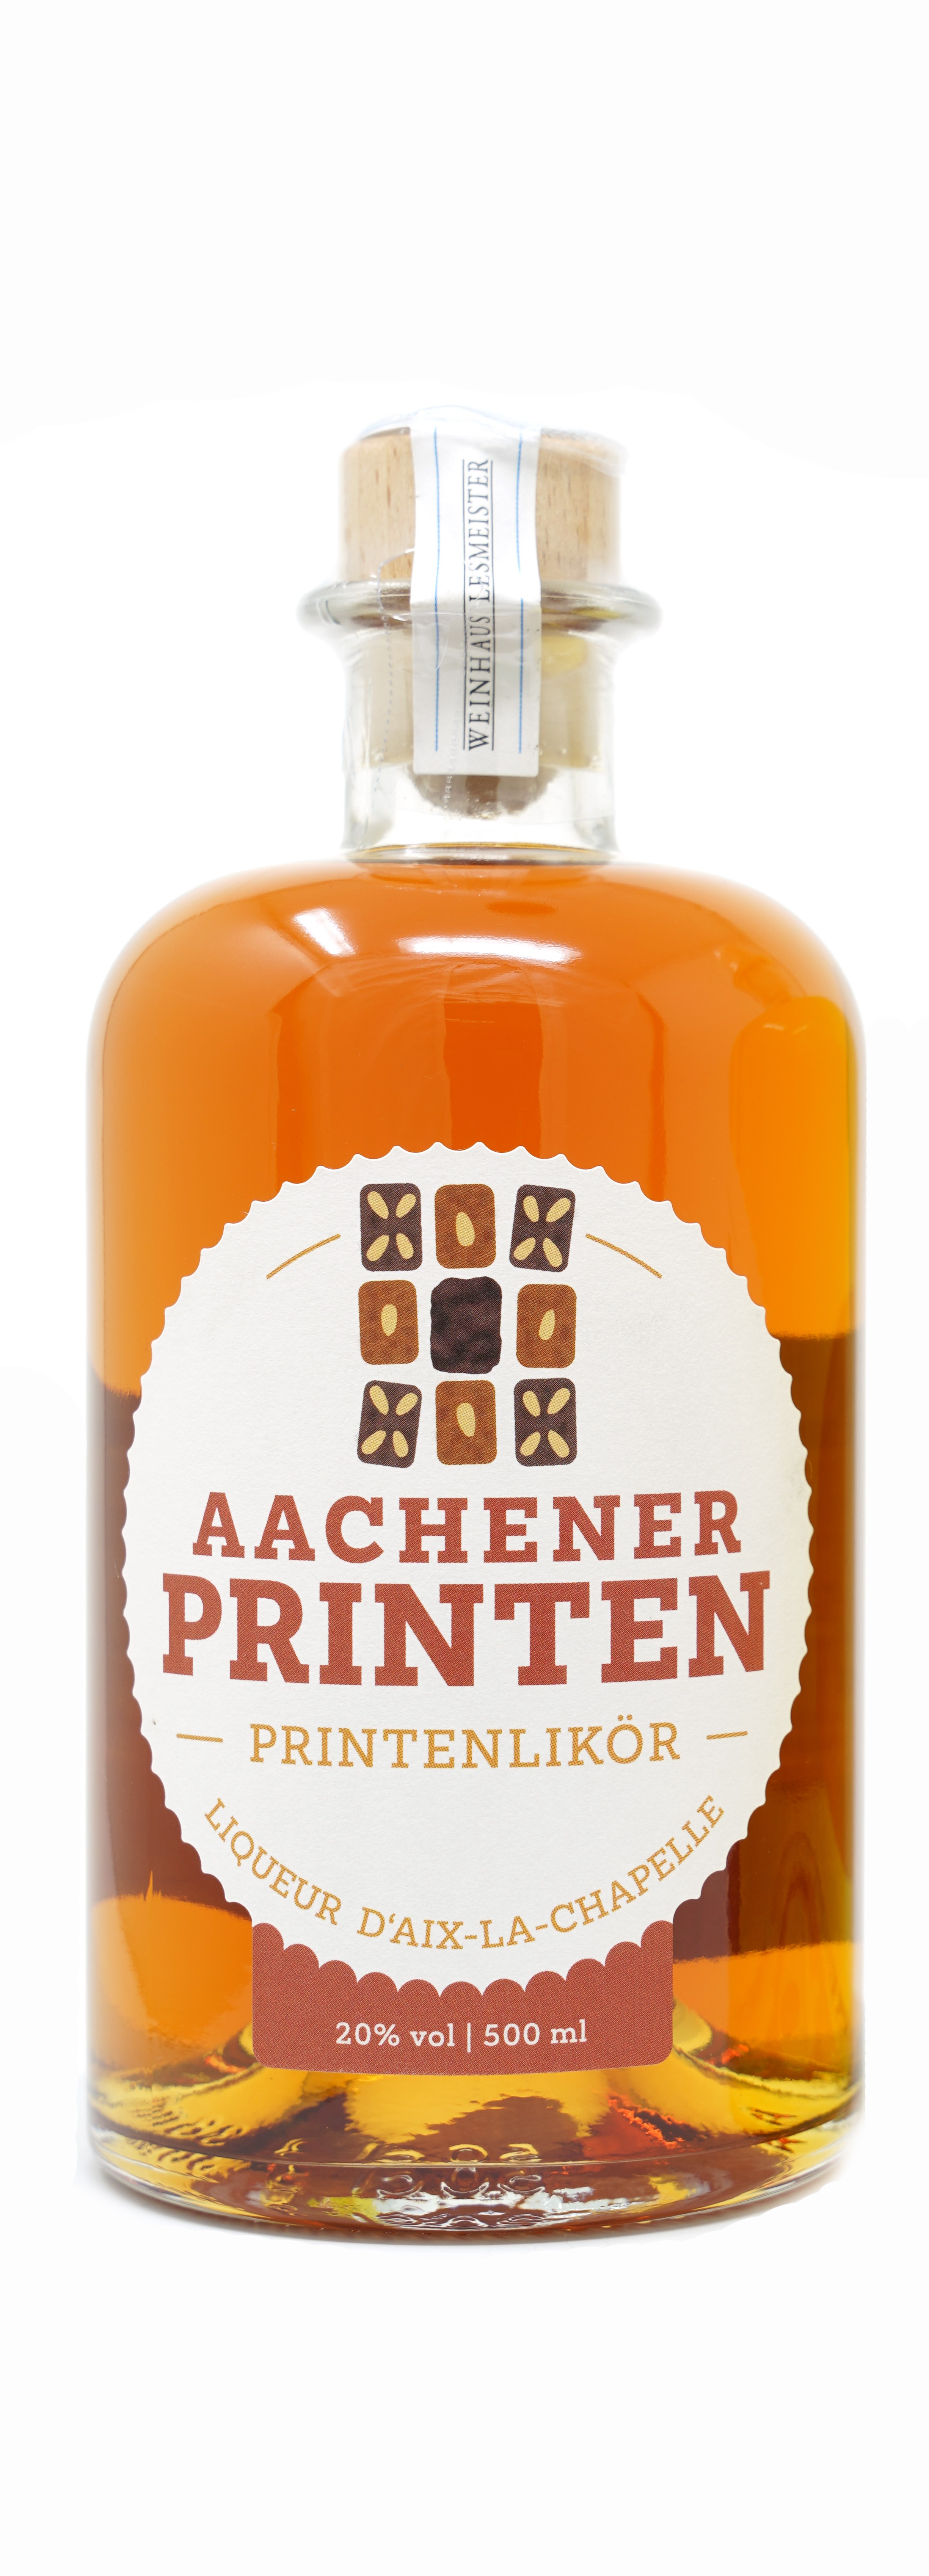 Aachener Printenlikör - Radermacher - 0,5l - 20% vol